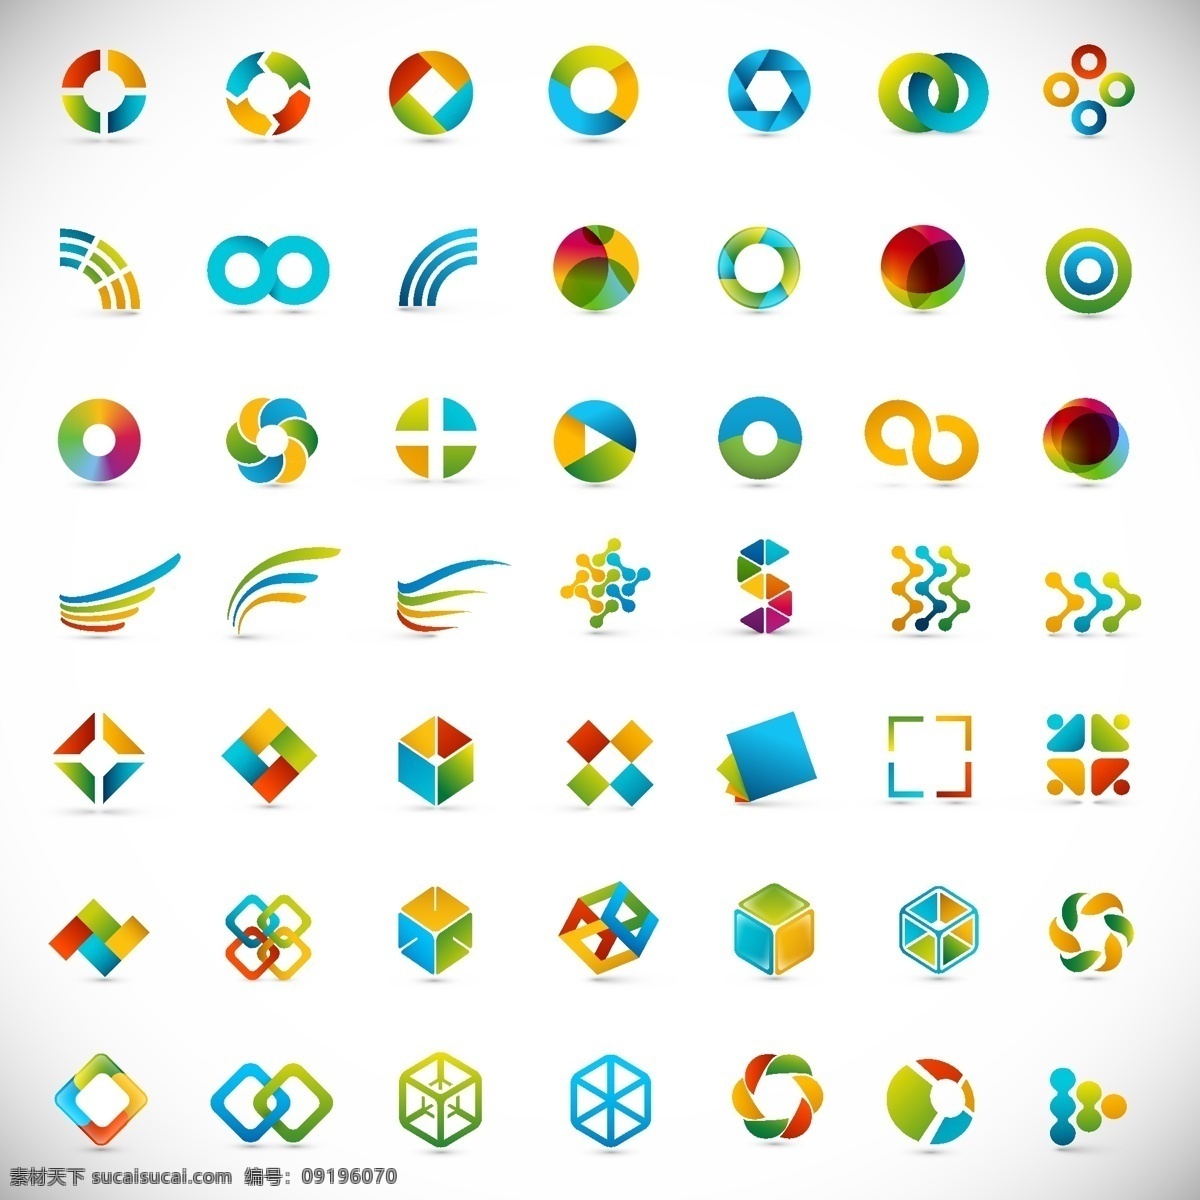 几何 形状 抽象 符号 几何形状 抽象符号 标志 图形 图案 方块 圆环 圆圈 矢量素材 标志图标 公共标识标志